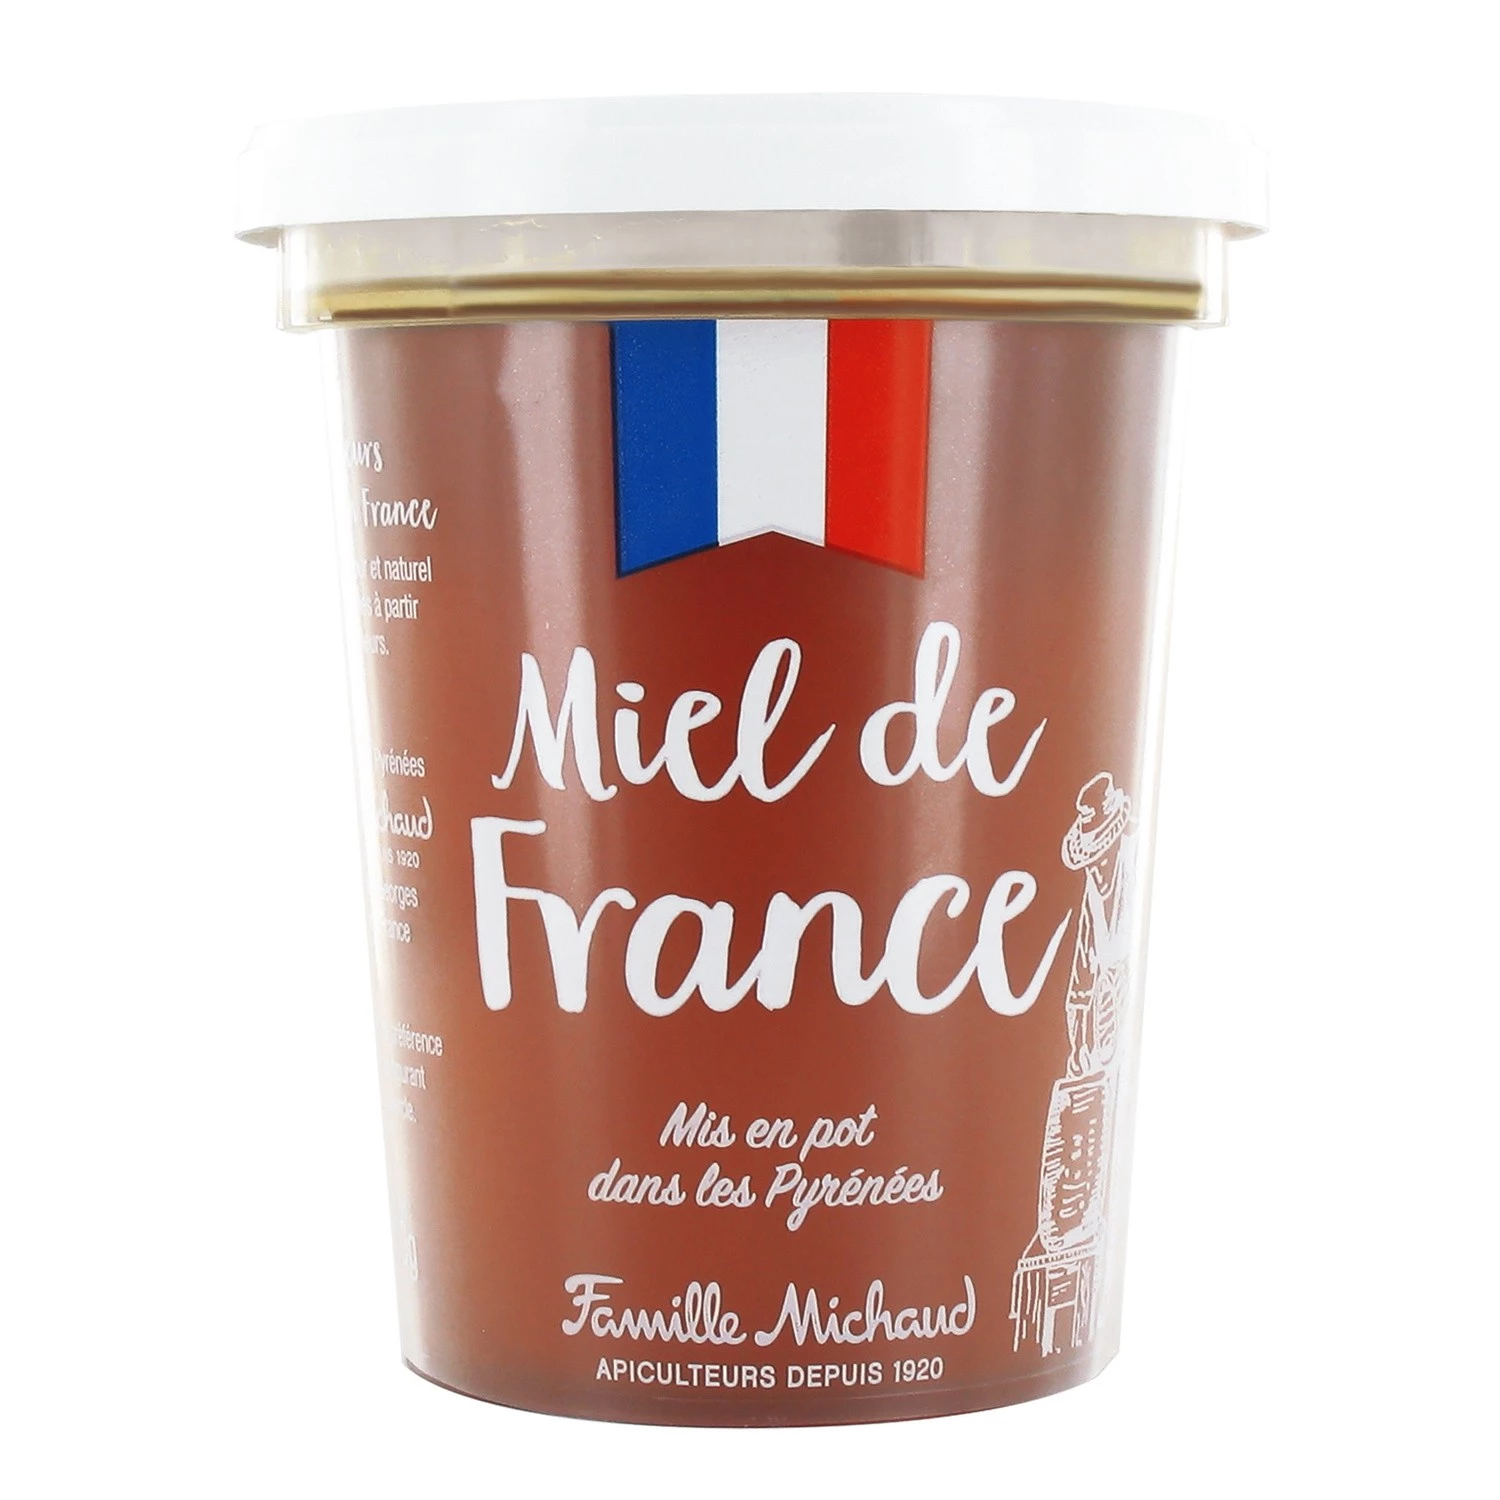 Miel de France Liquide 500g - FAMILLE MICHAUD